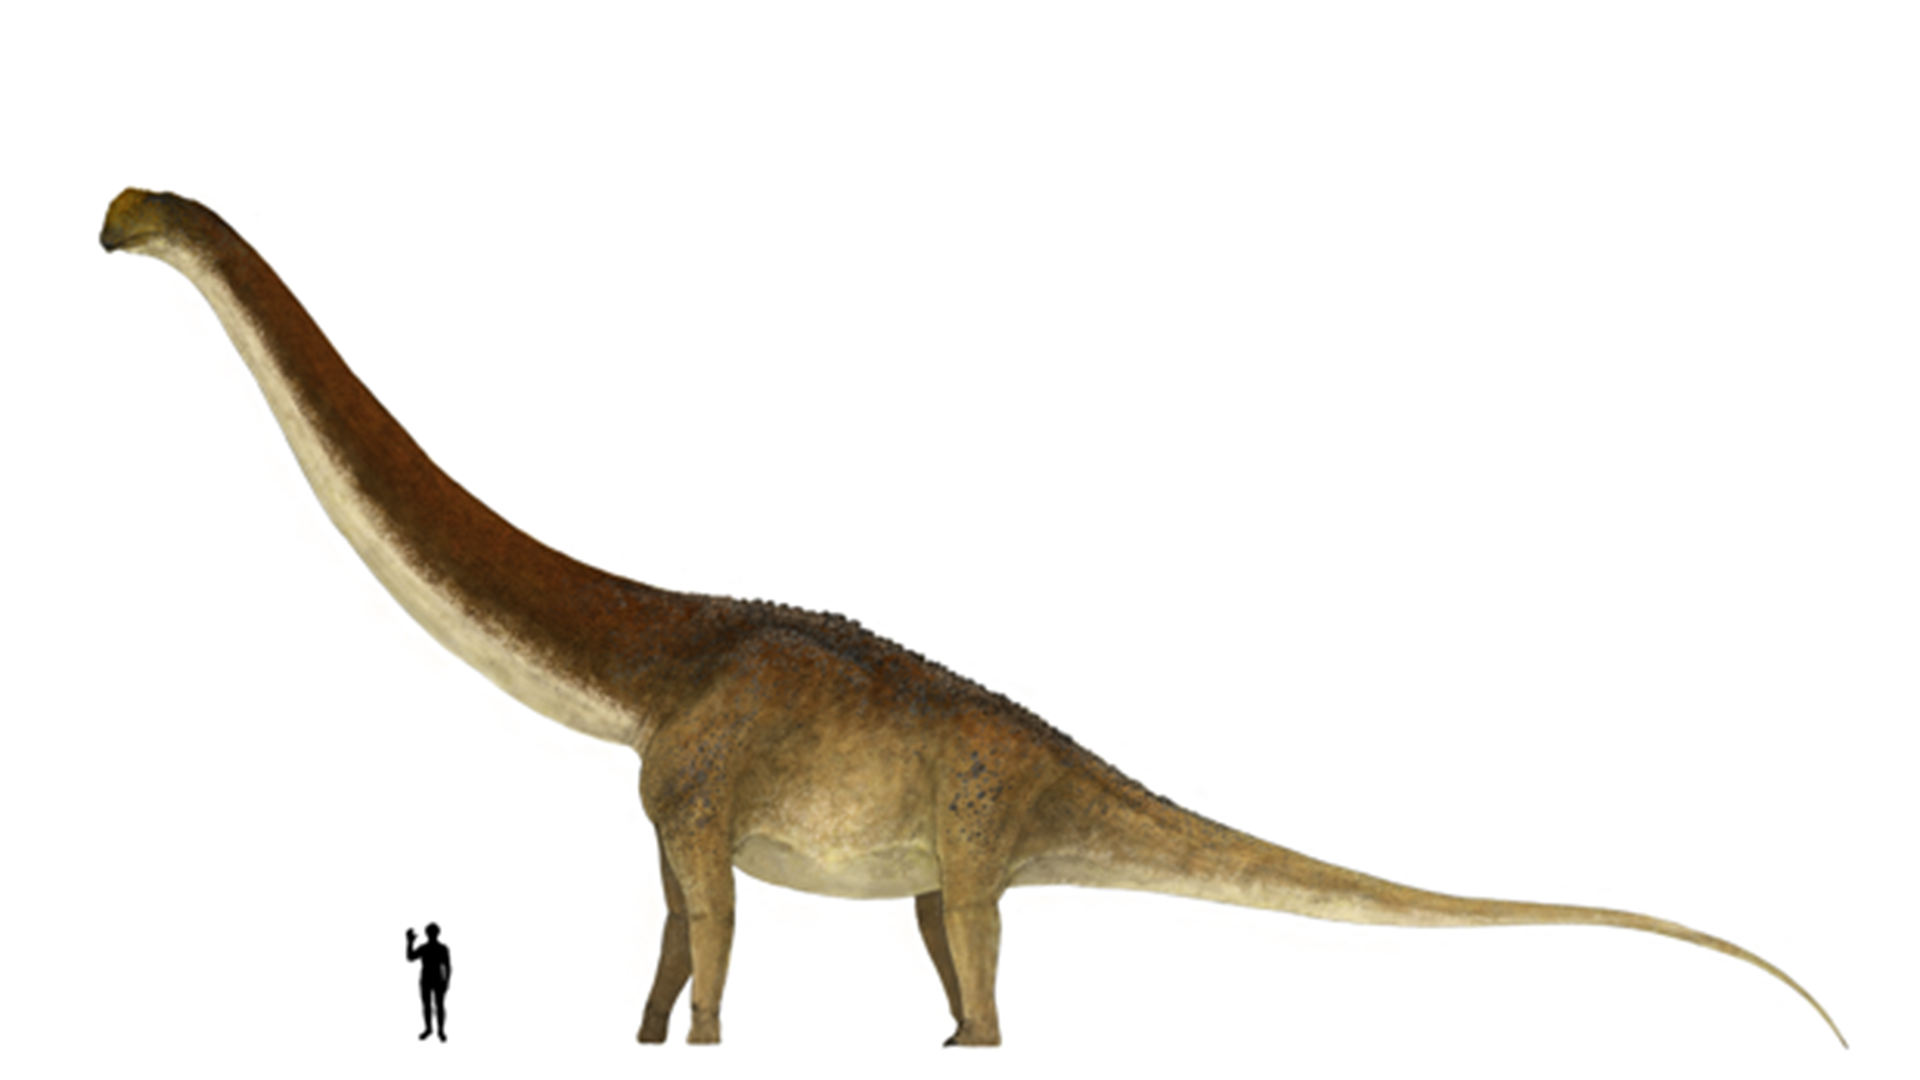 Científicos sostienen que “se considera uno de los saurópodos más grandes jamás encontrados, probablemente superando en tamaño a Patagotitan” (Cretaceus Research)